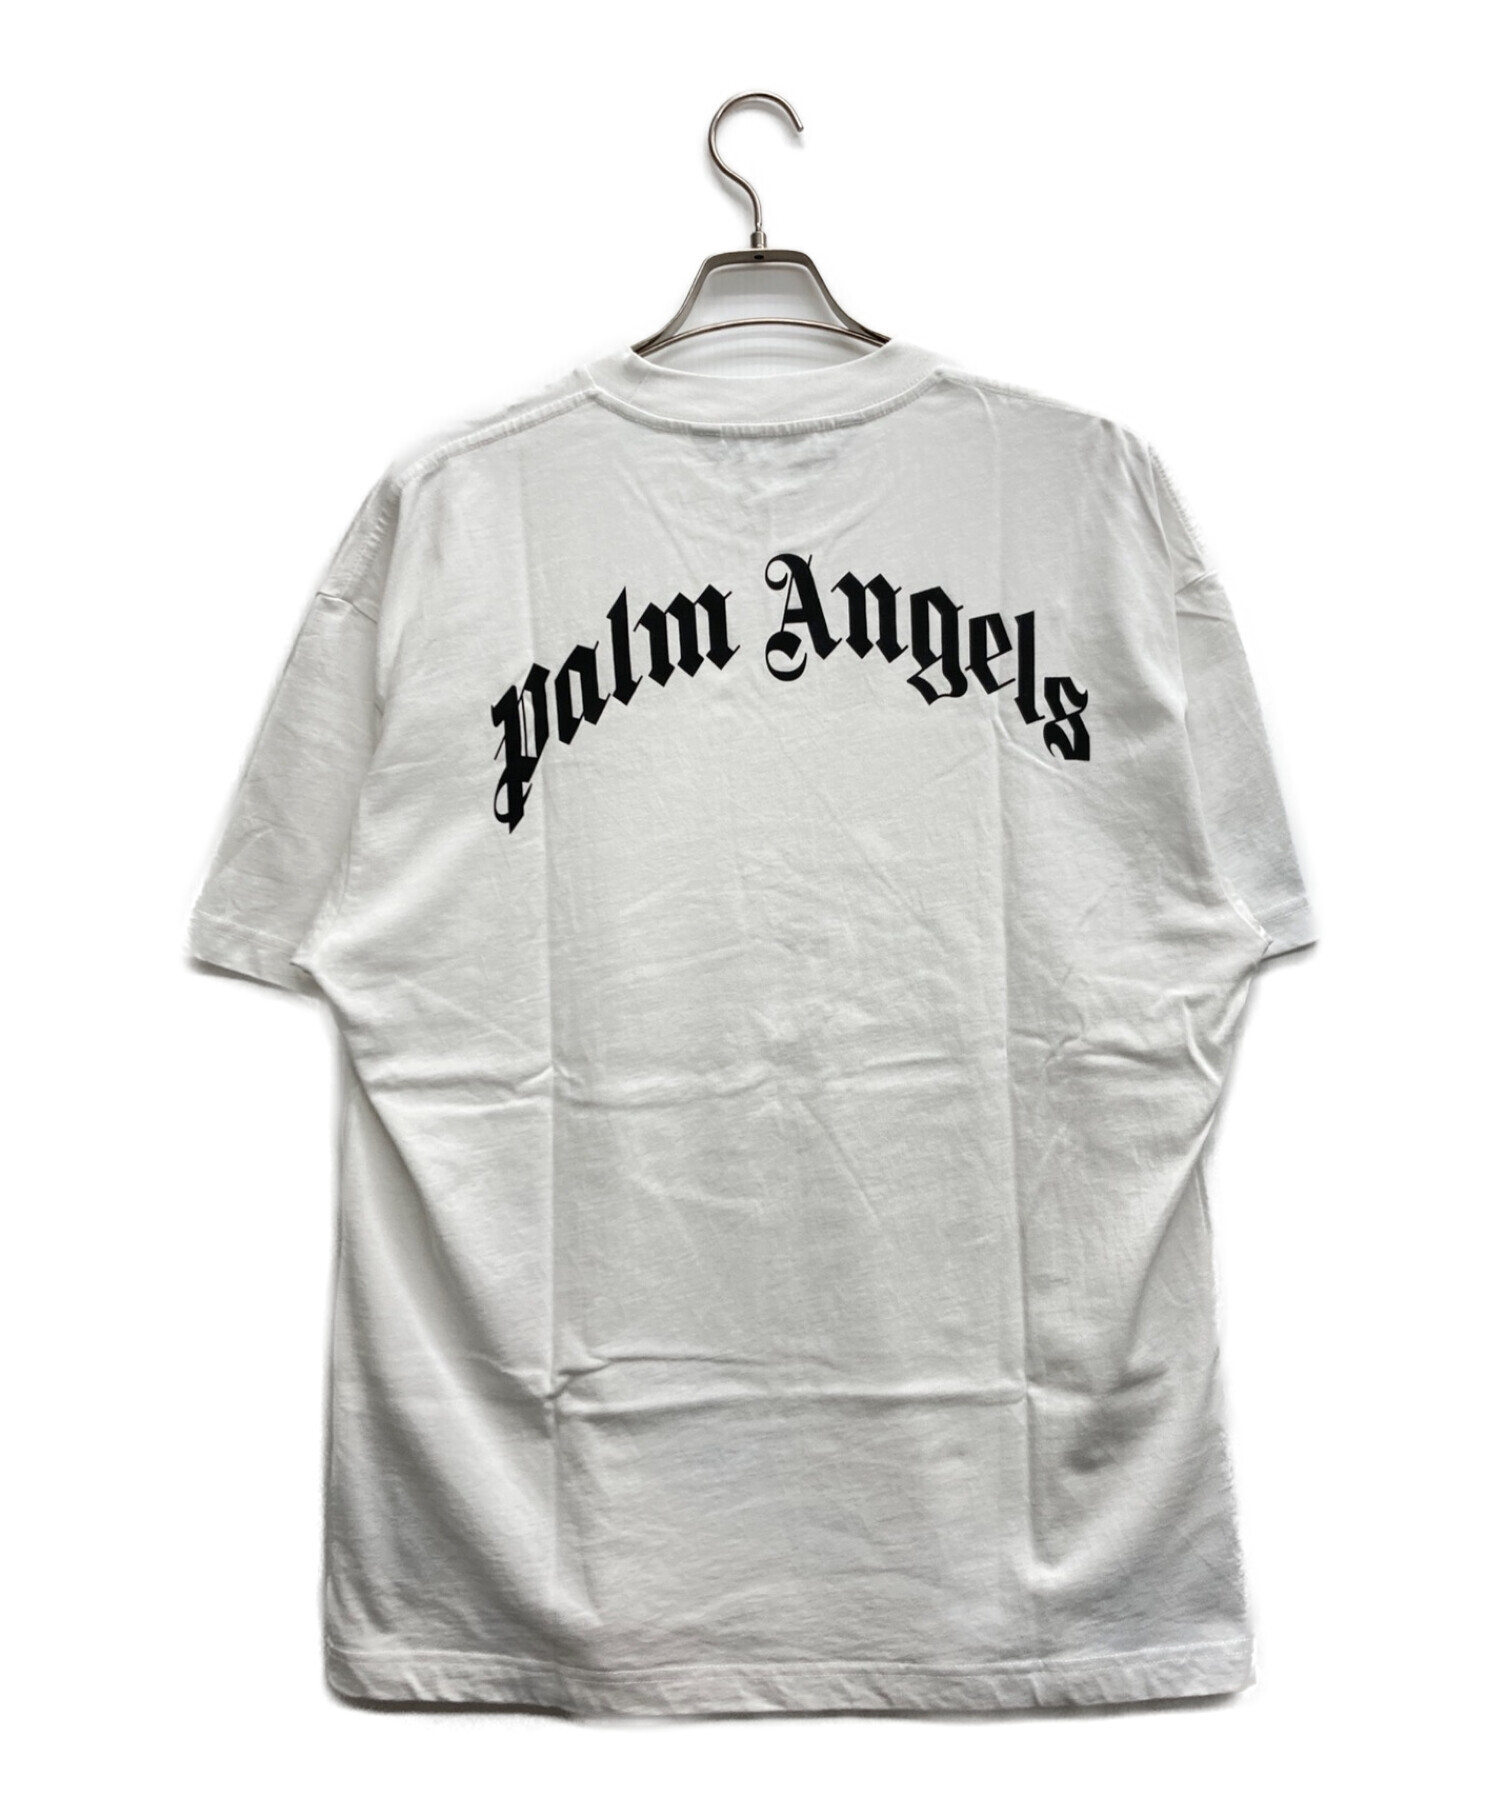 Tシャツ半袖カットソーPALM ANGELS パームエンジェルス Tシャツ Lサイズ